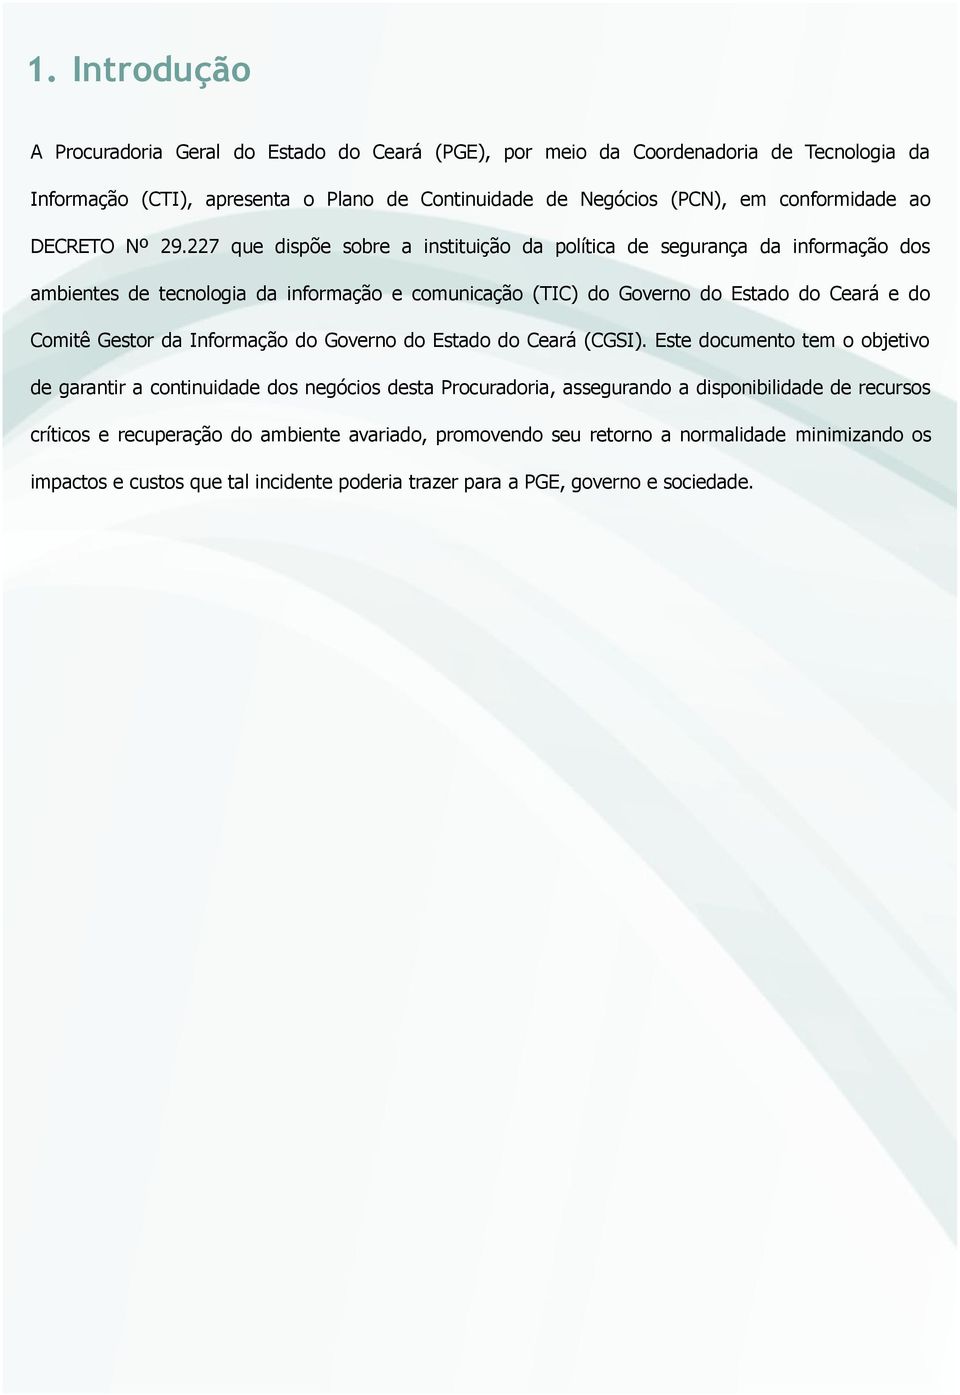 227 que dispõe sobre a instituição da política de segurança da informação dos ambientes de tecnologia da informação e comunicação (TIC) do Governo do Estado do Ceará e do Comitê Gestor da